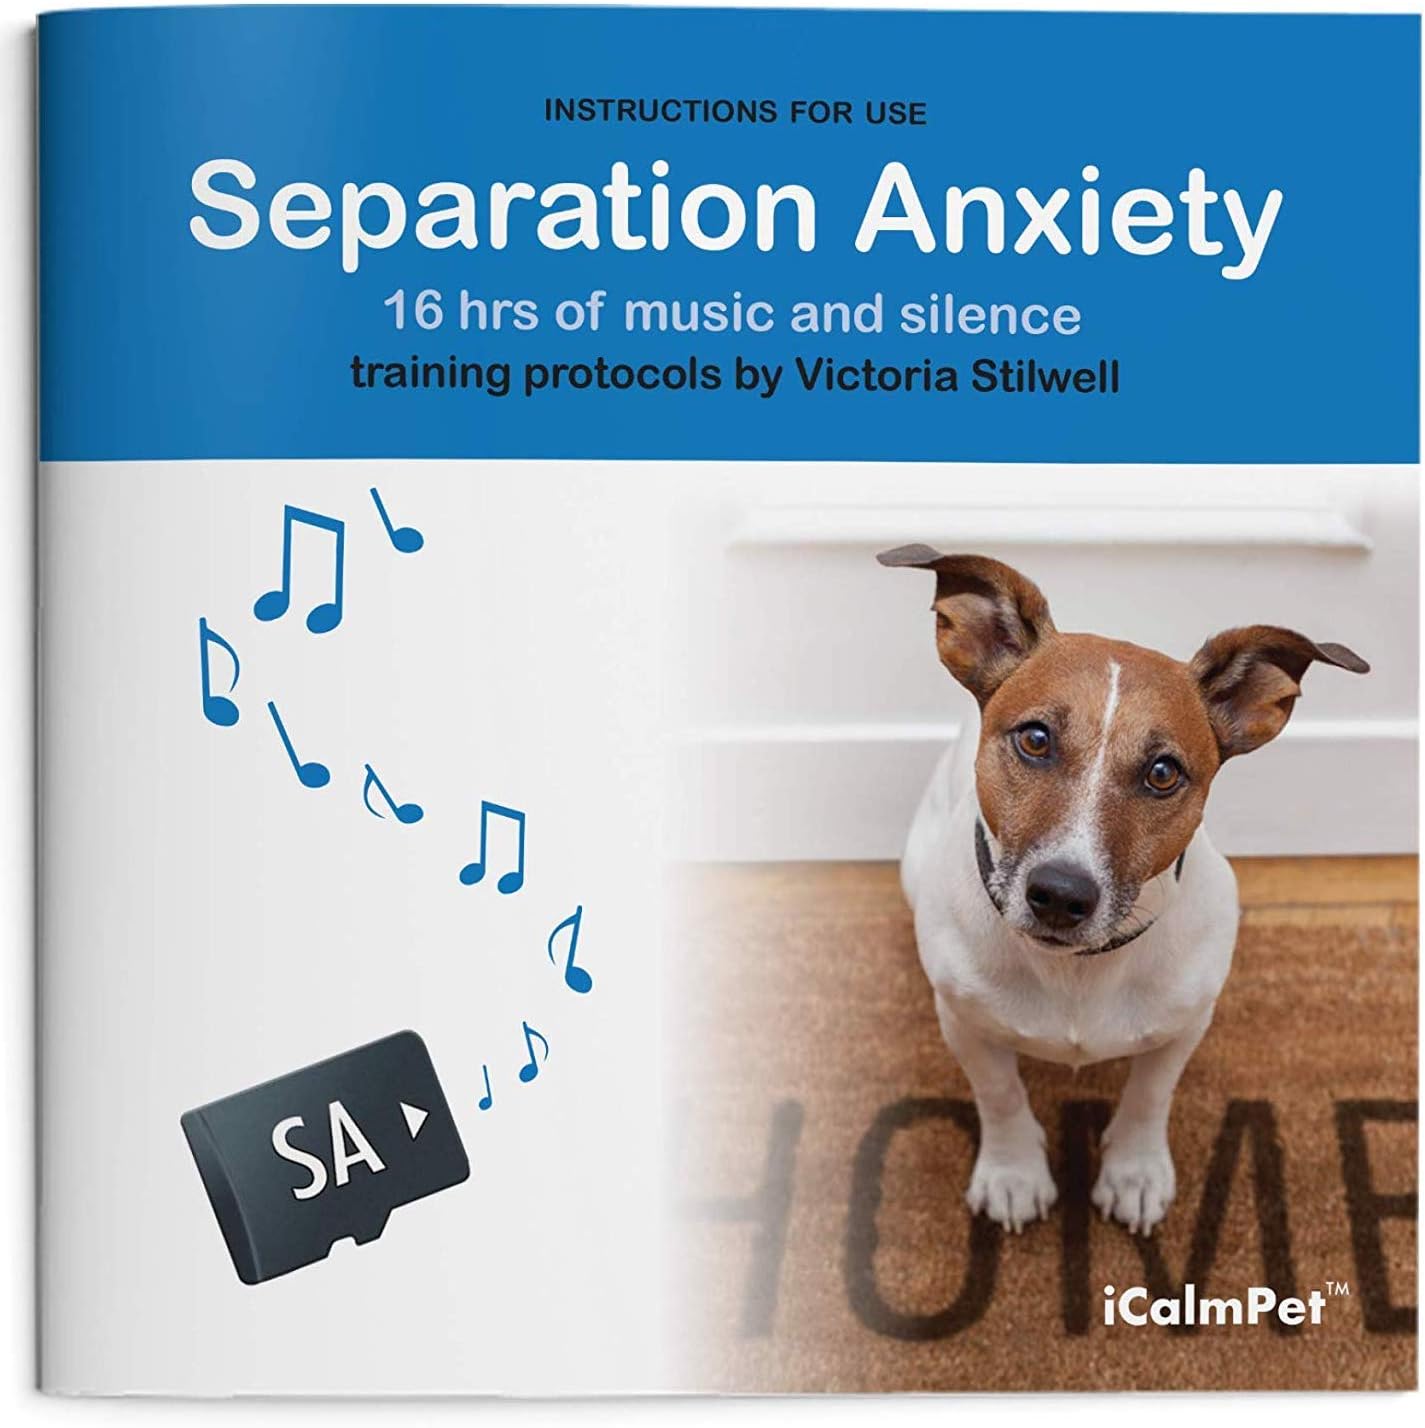 iCalmPet à travers l'oreille d'un chien : L'anxiété de séparation canine